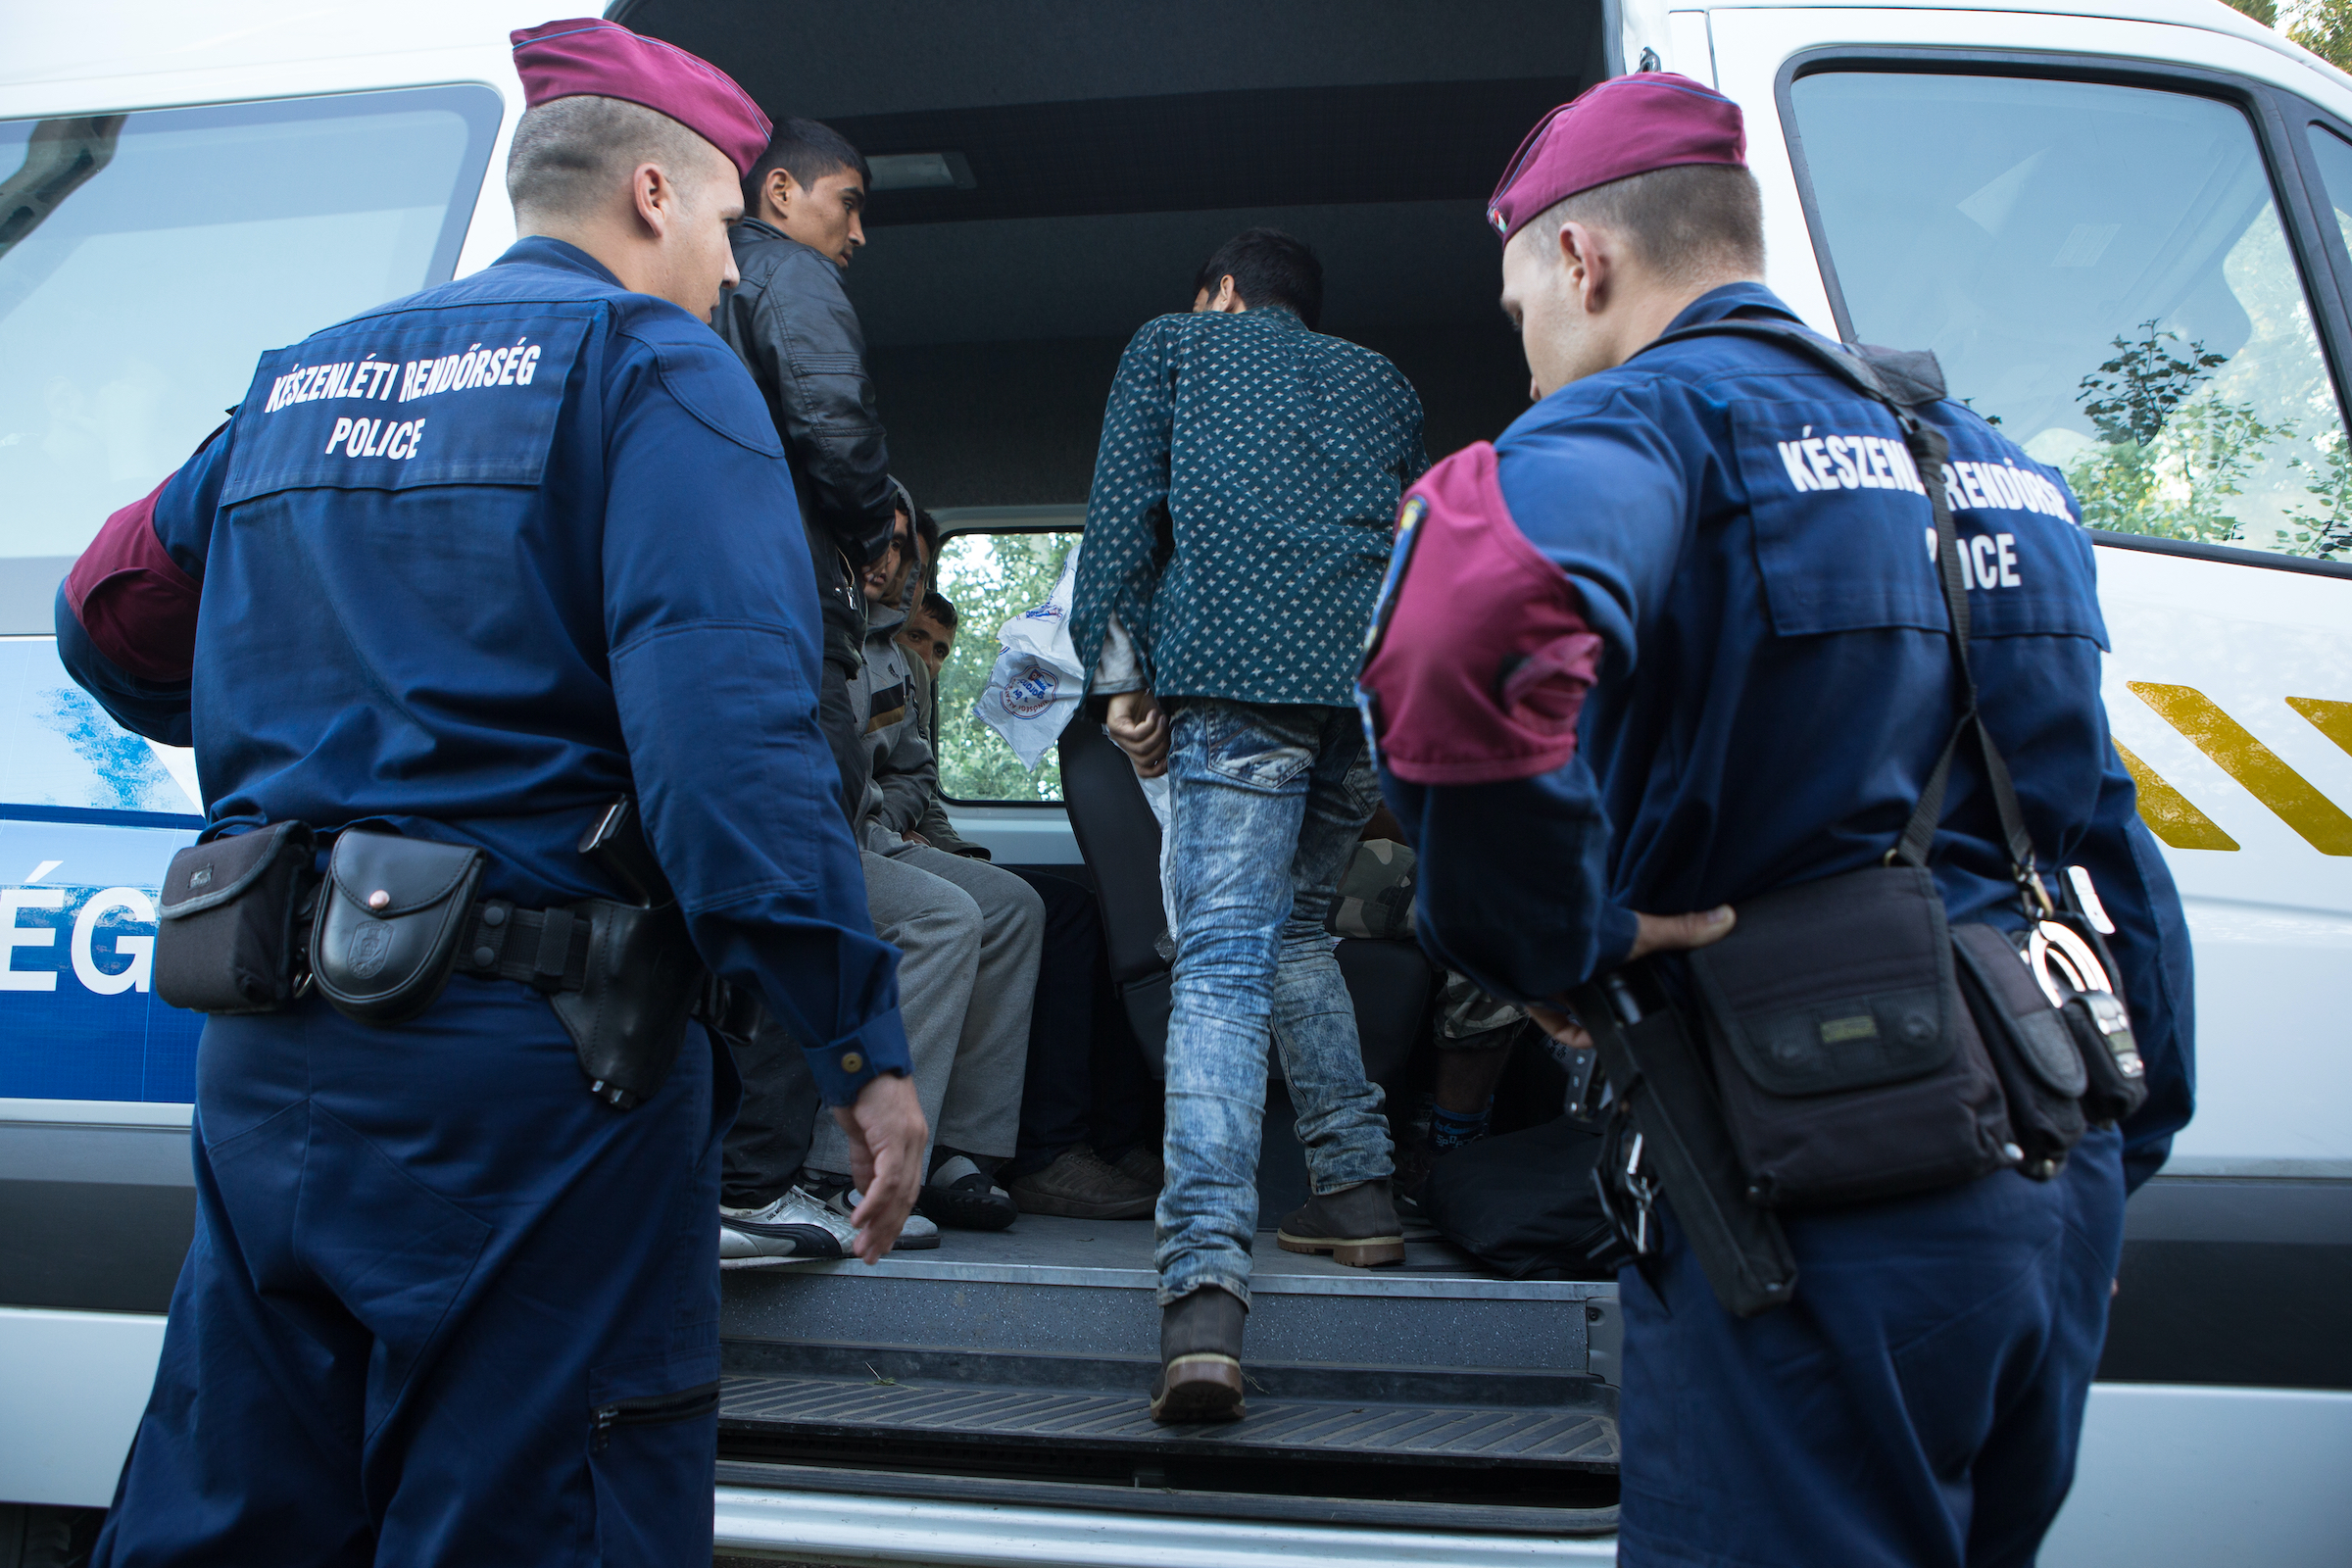 Maďarsko se vzepřelo rozhodnutí soudu EU a deportuje vetřelce bez dokladů4.6 (9)